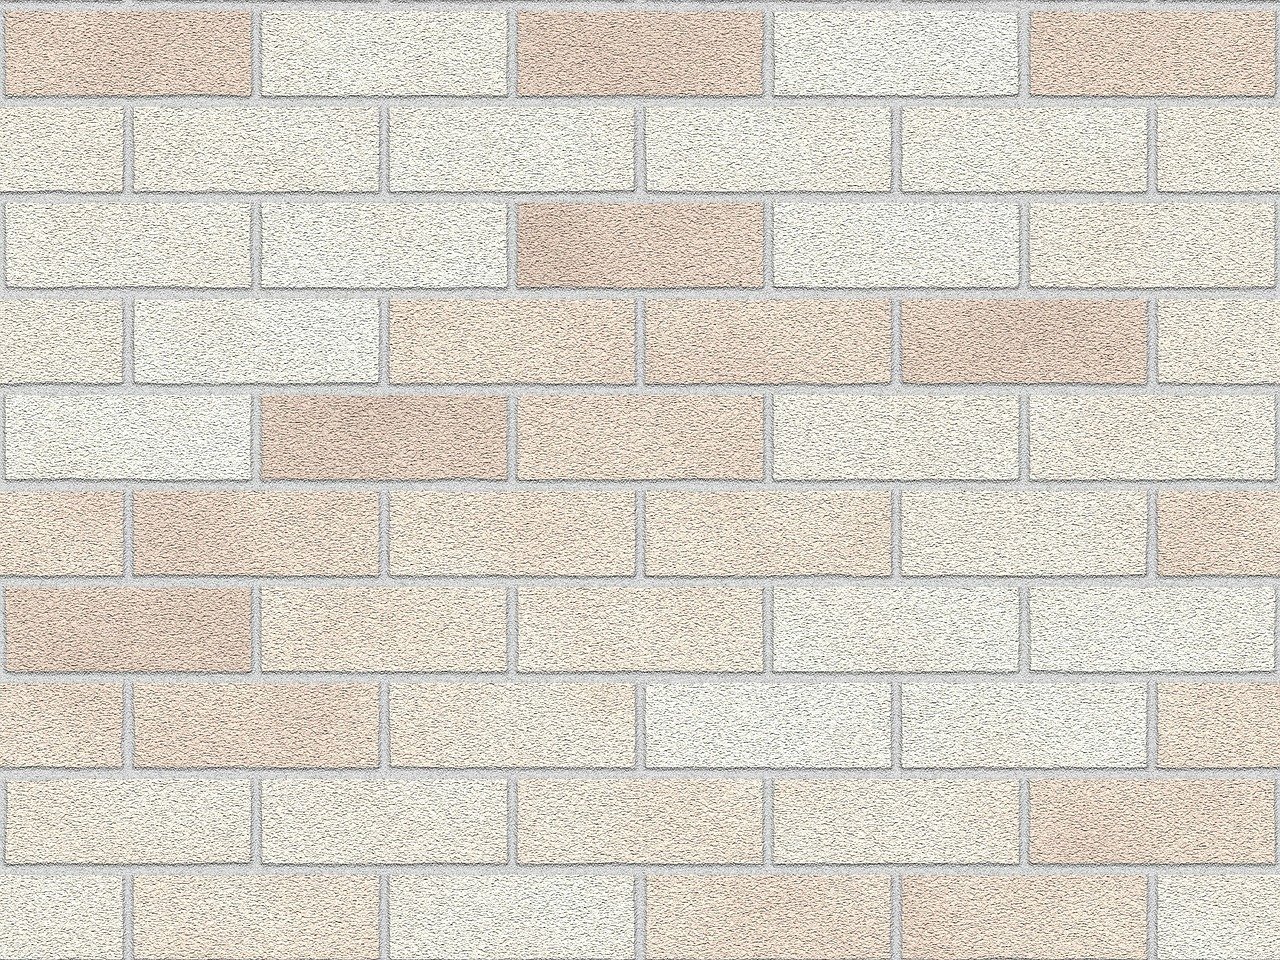 brick-wall-185082-1280